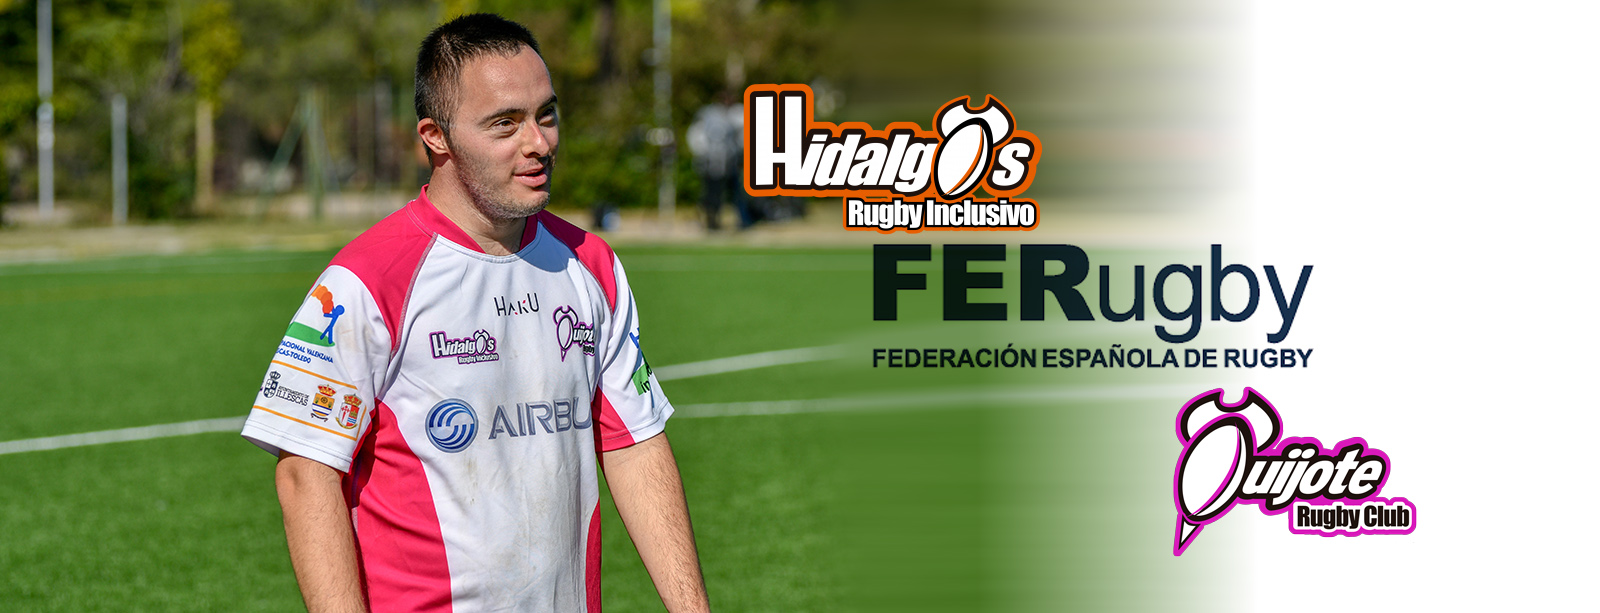 Los Hidalgos en la Federación Española de Rugby